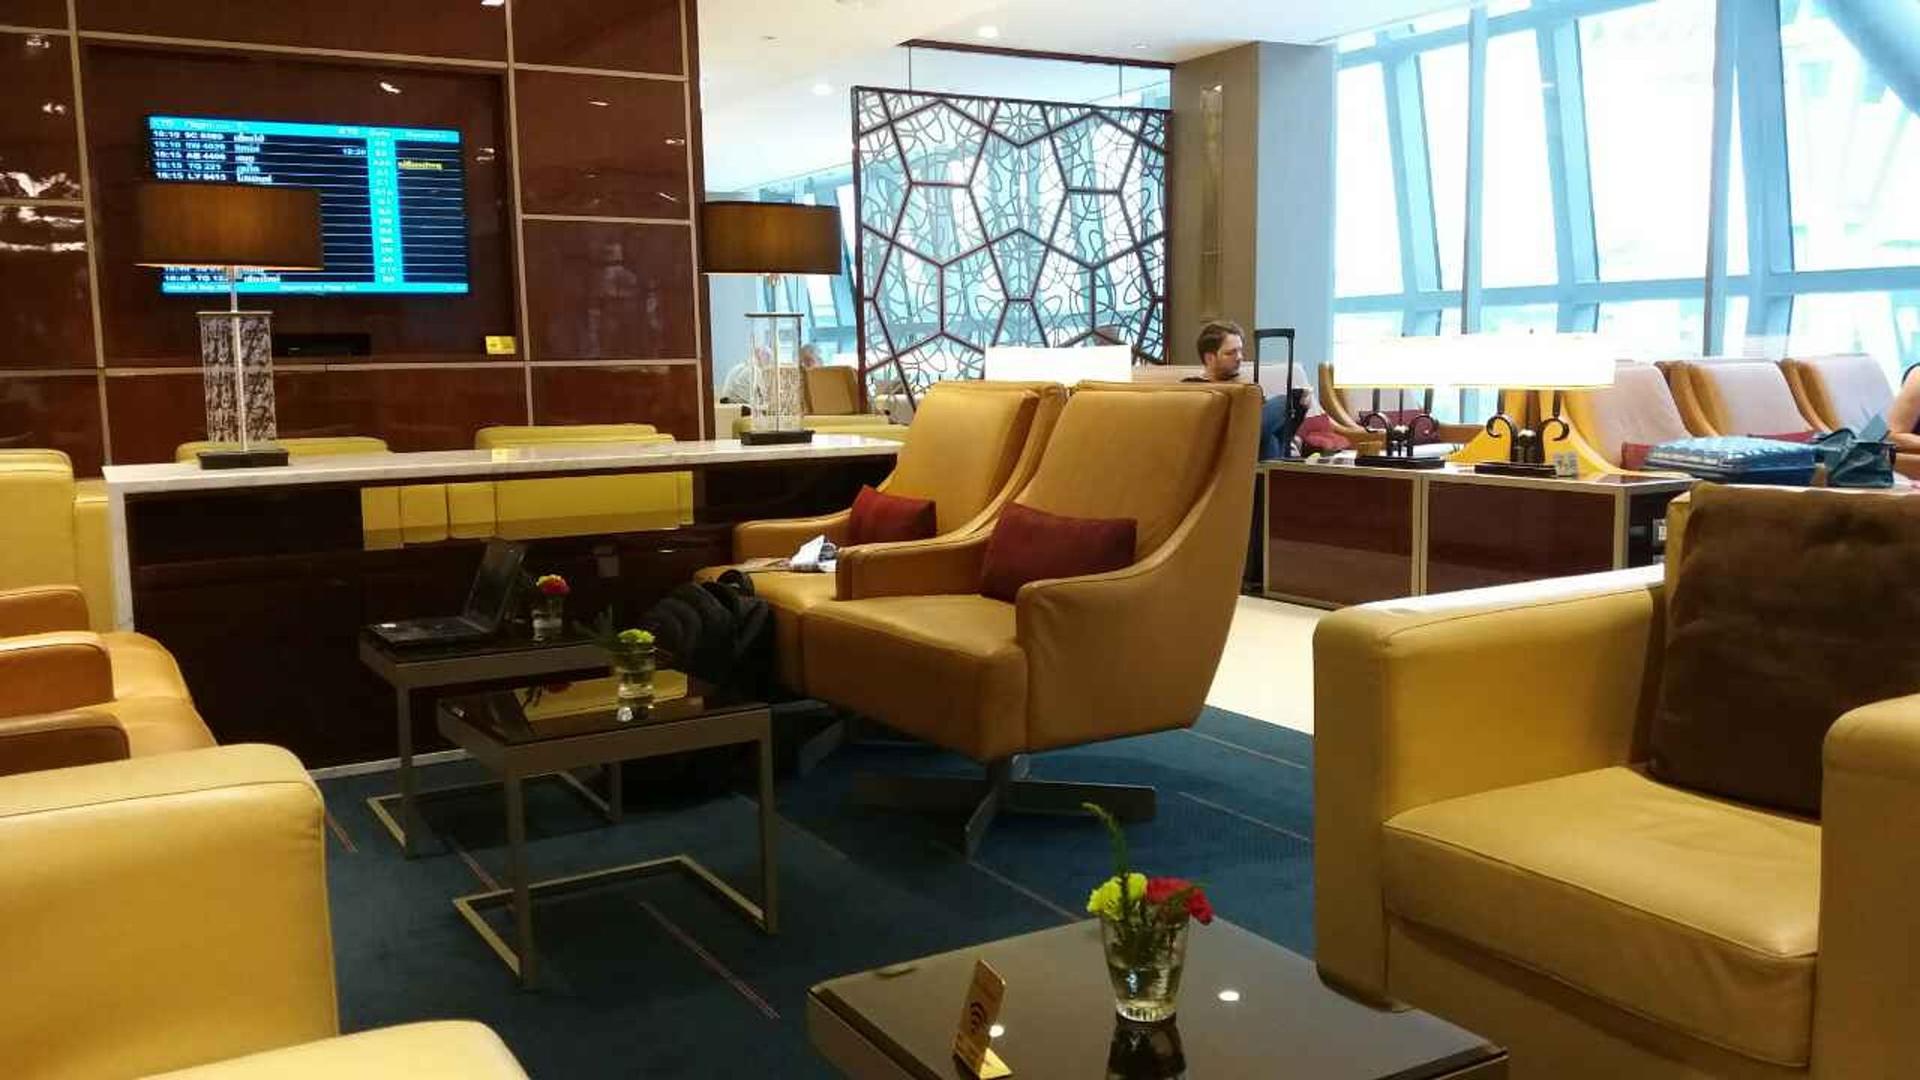 The Emirates Lounge image 14 of 15